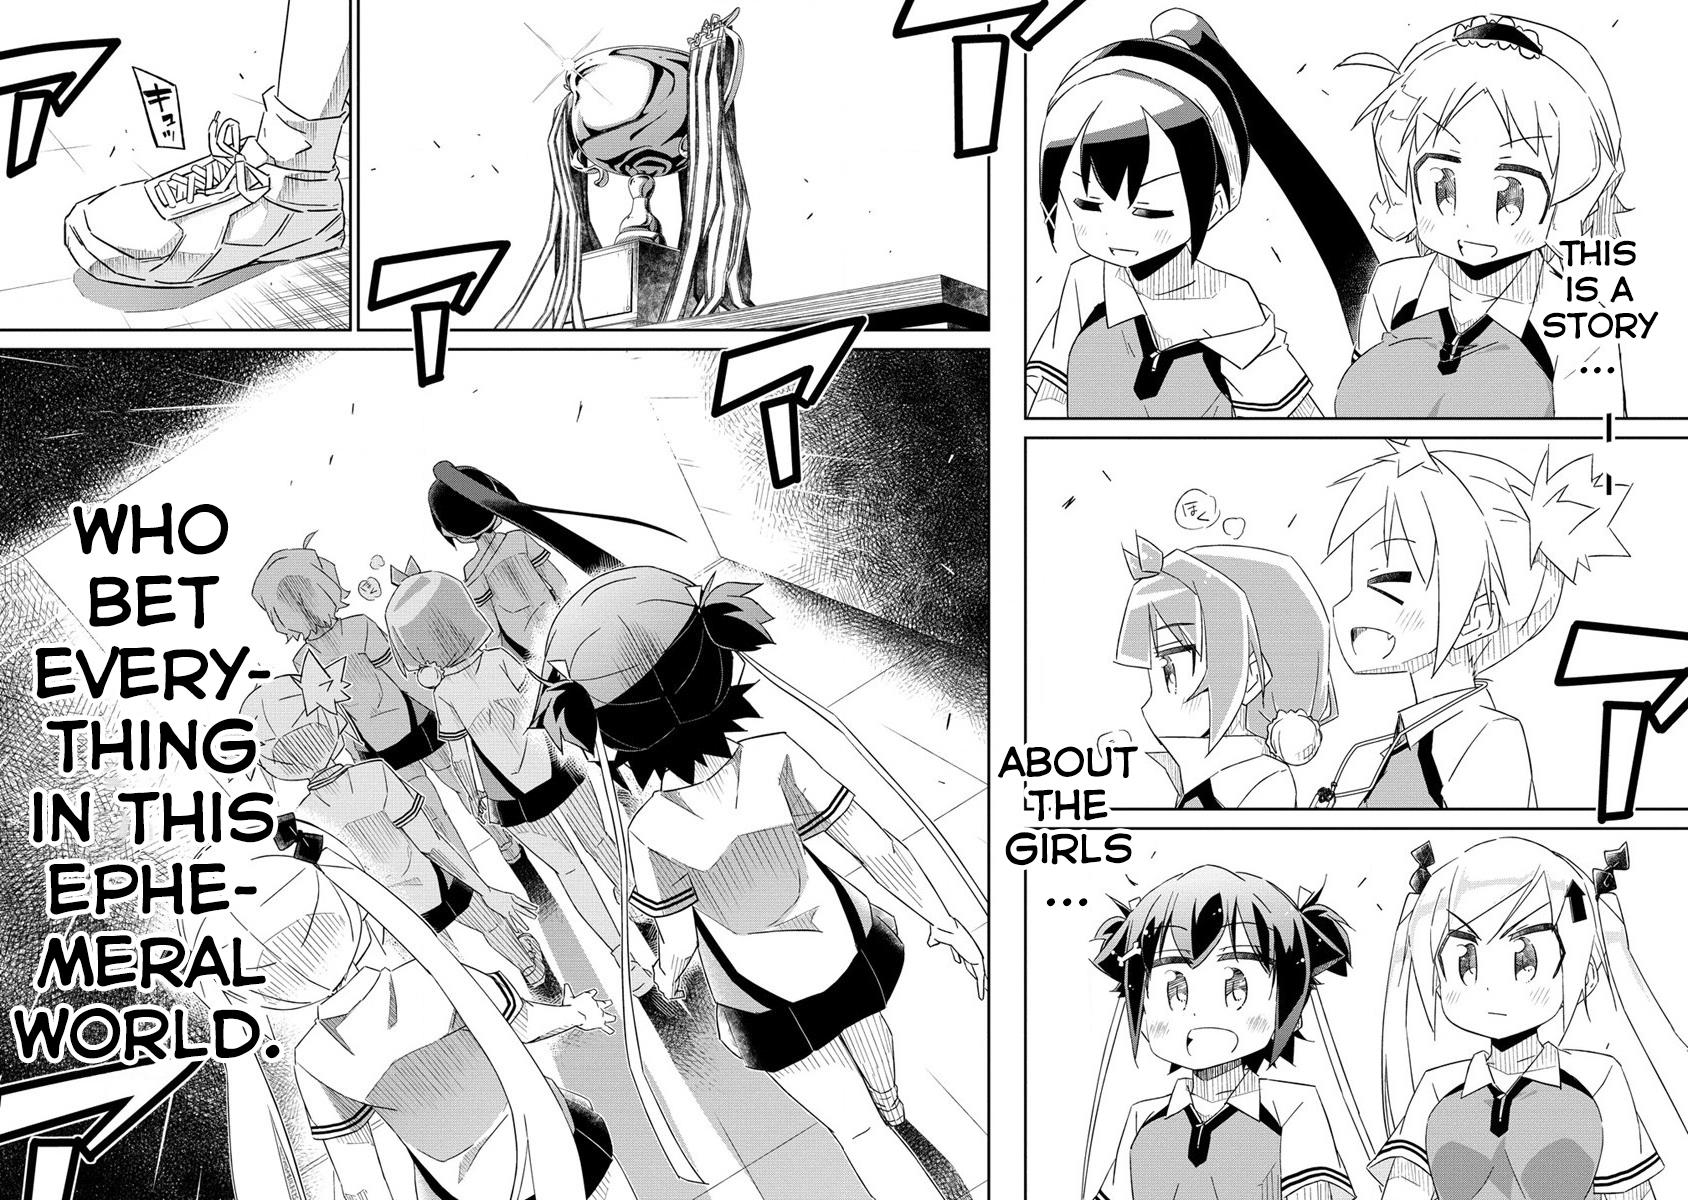 Shakunetsu No Takkyuu Musume Reburn!! - Page 2